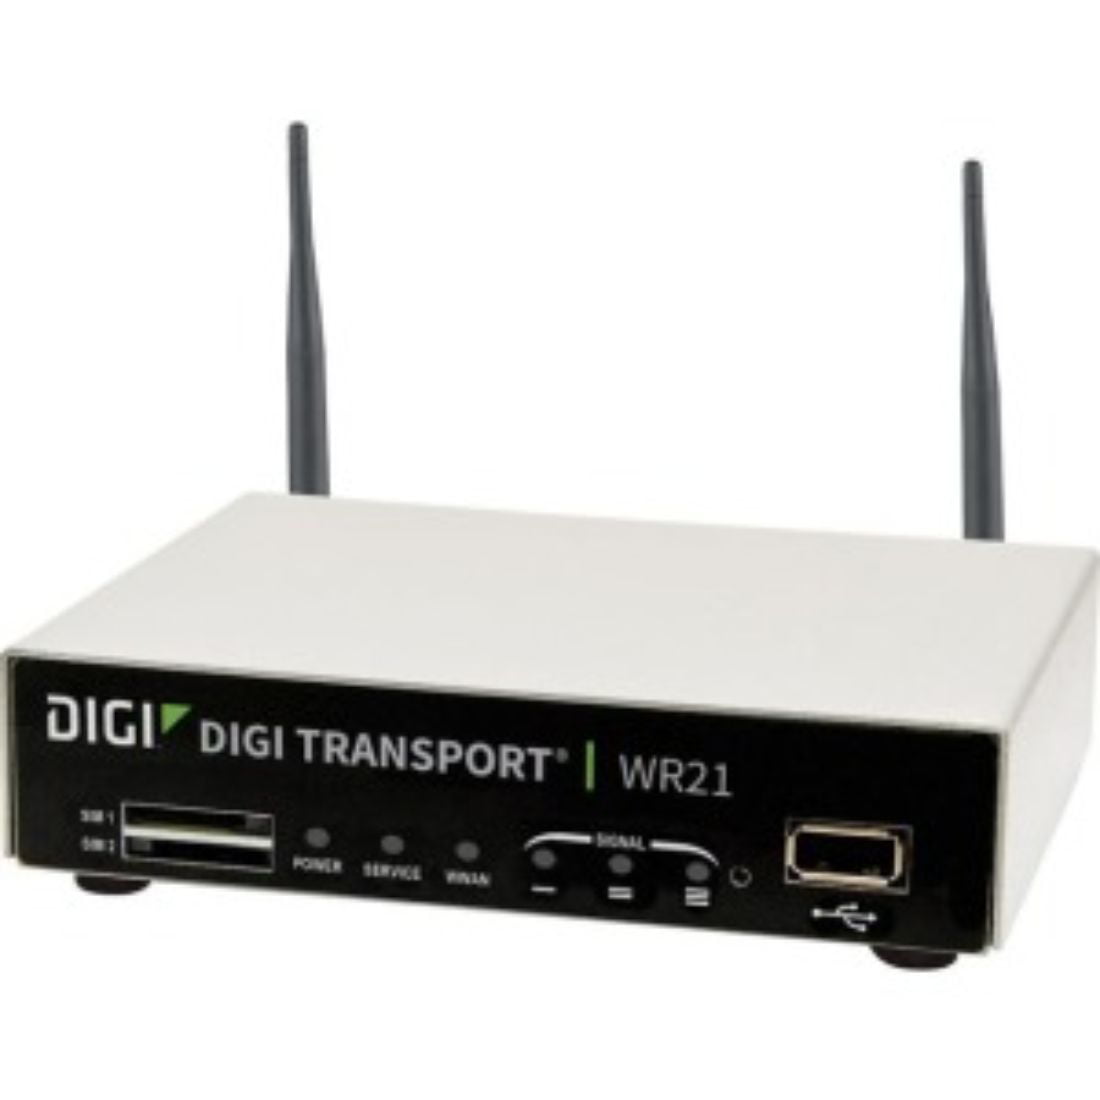 Digi Cellular Modem/Wireless Router - Walmart.com